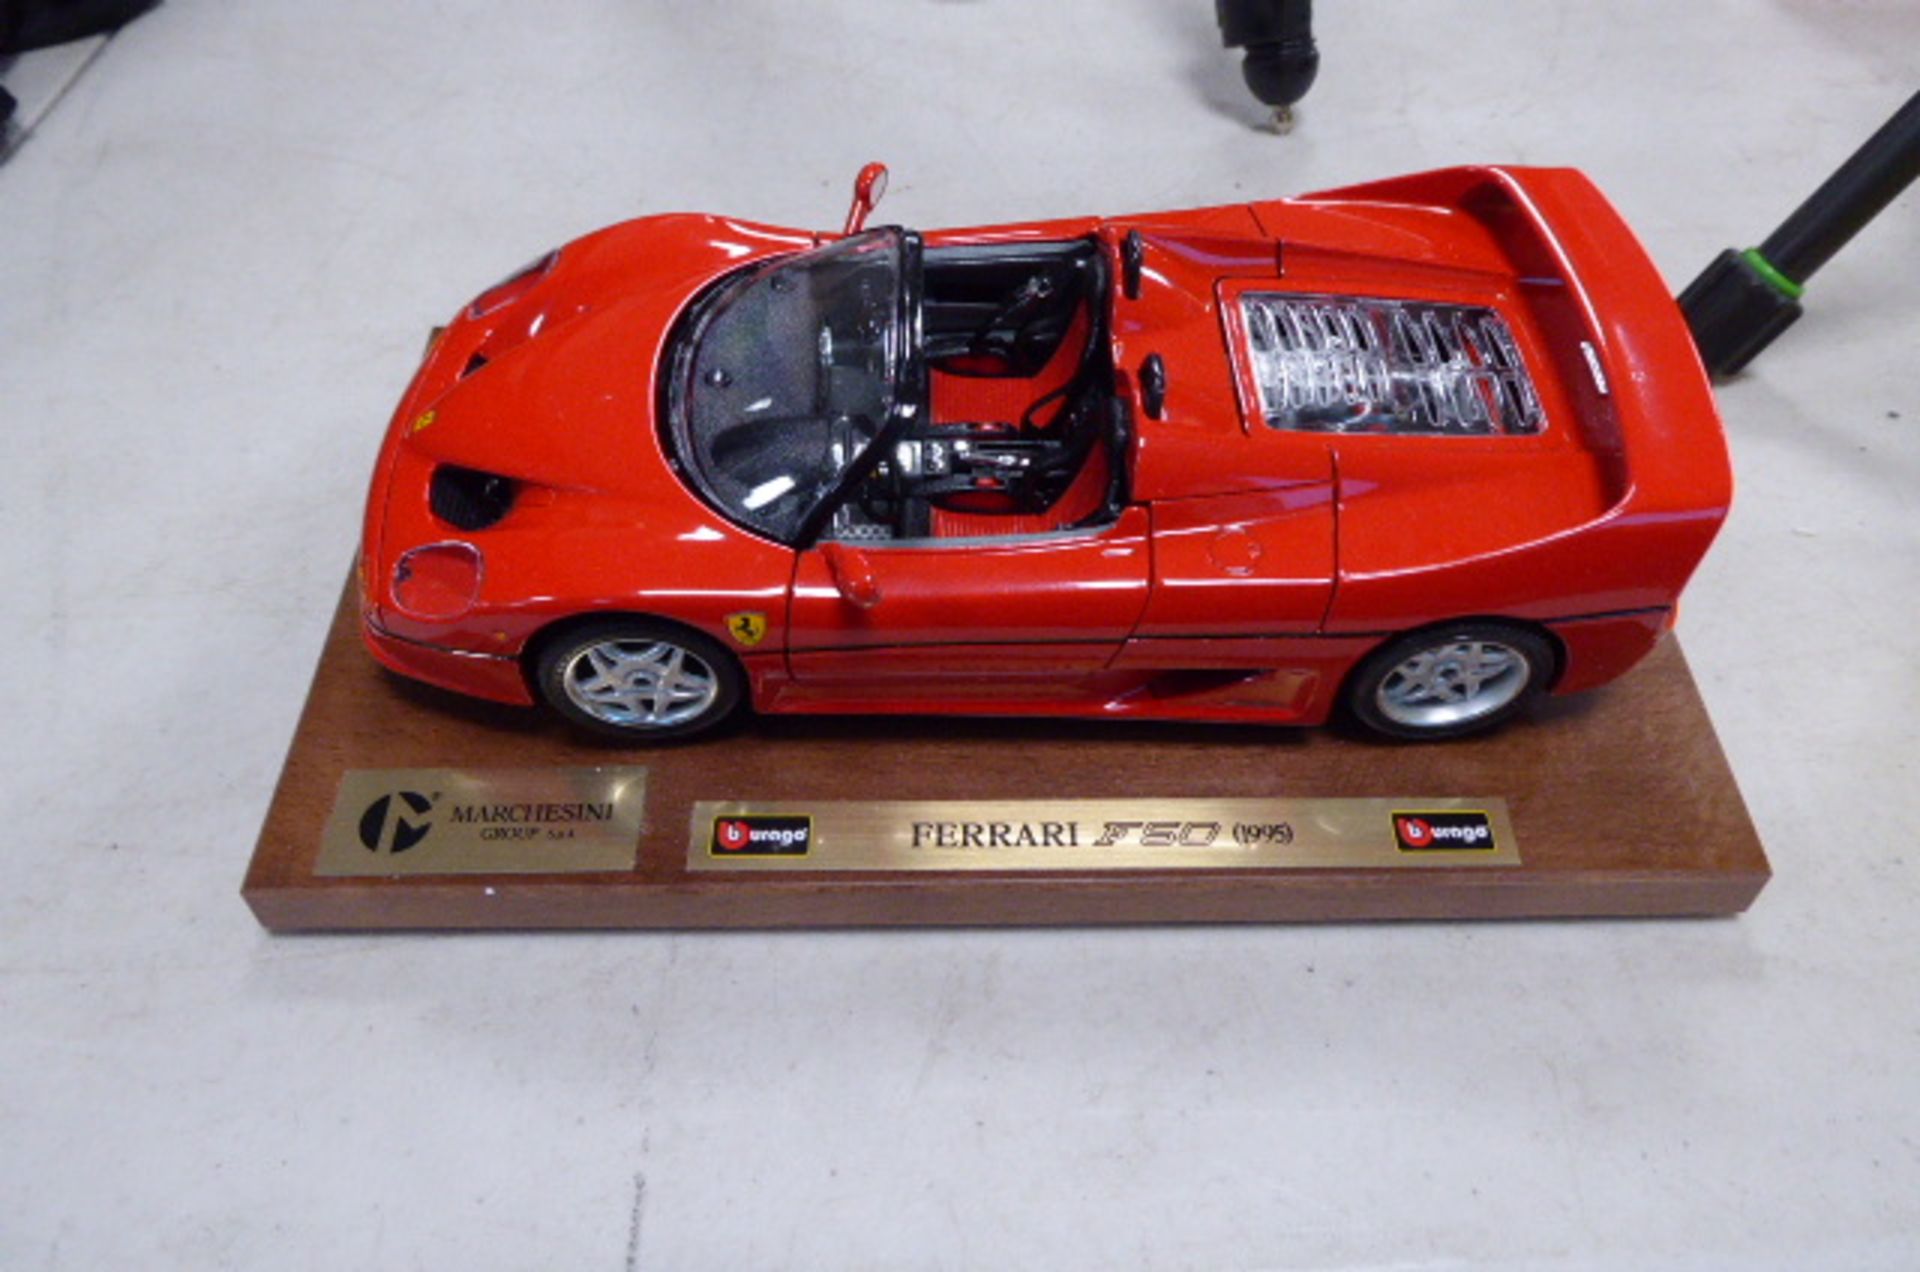 Ferrari F50 collectible model in box